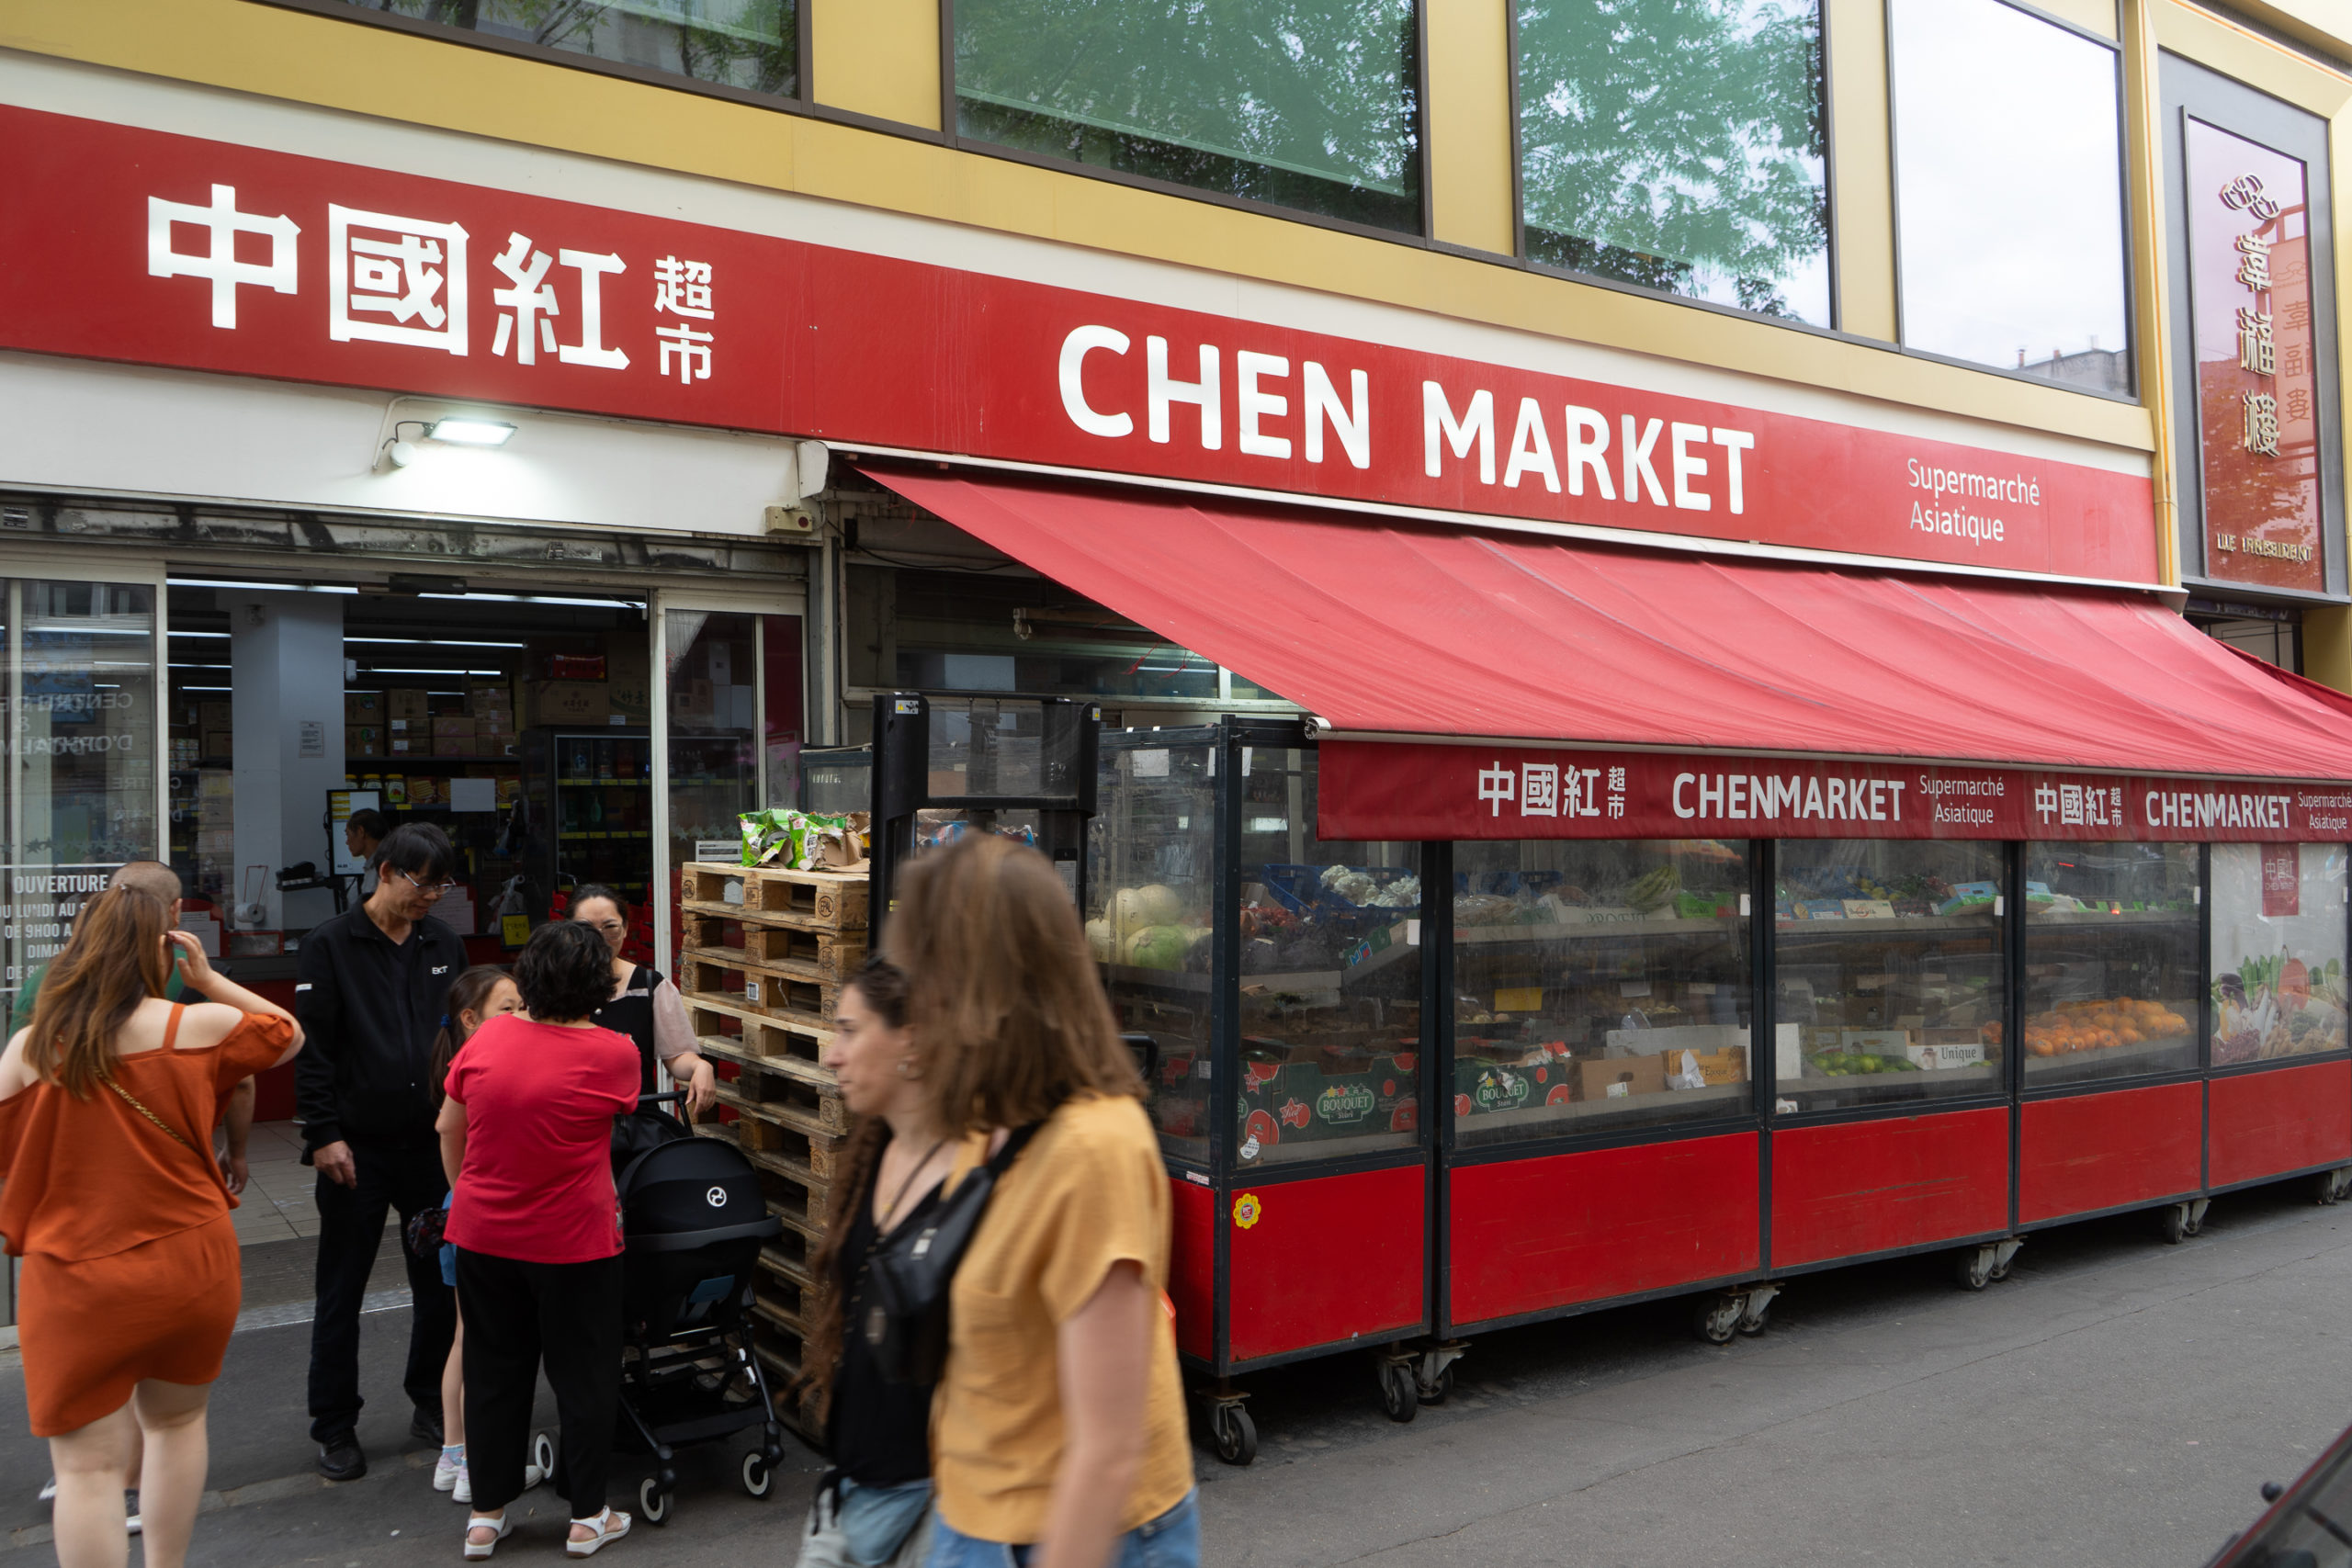 Sauces pas chère - Market Oriental